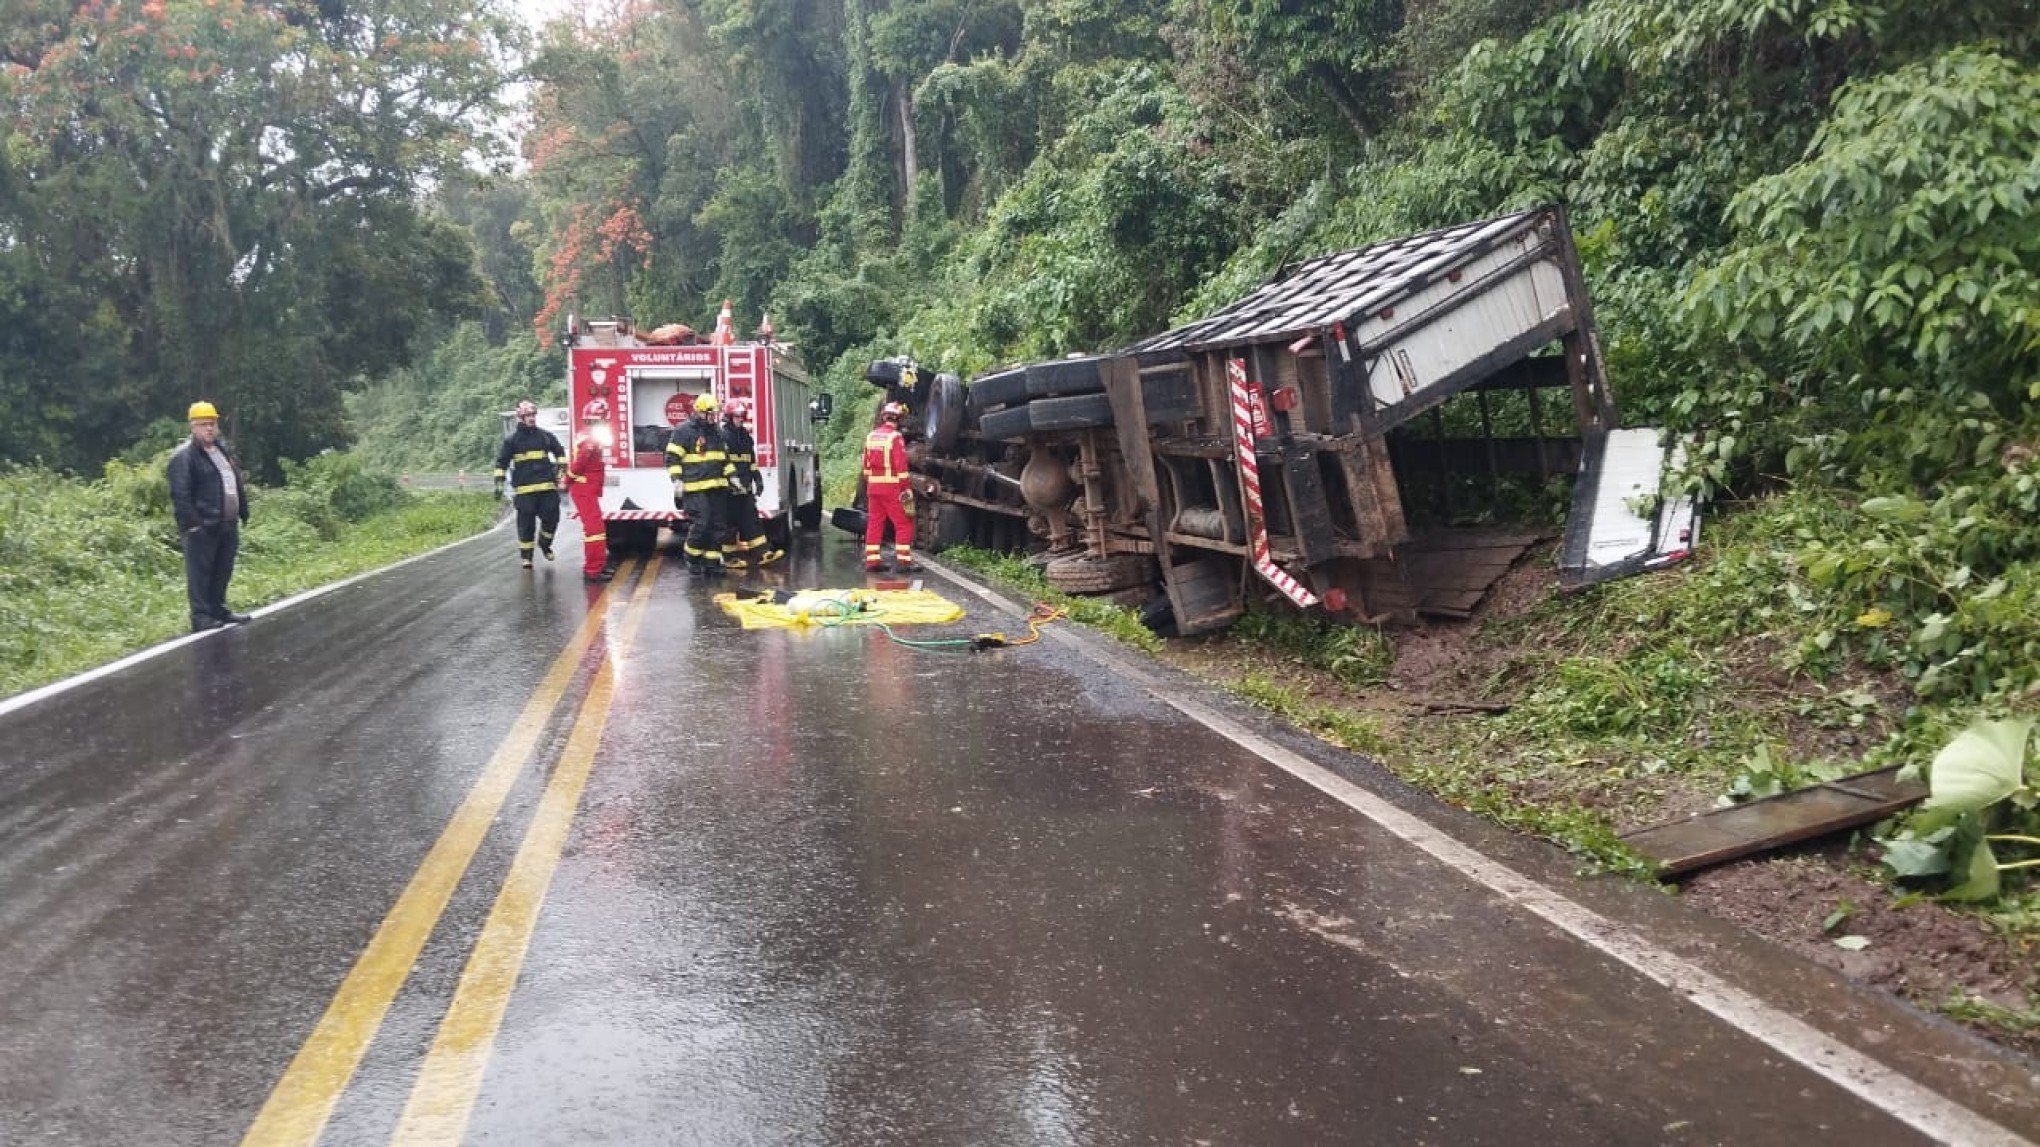 RS-020: Caminhão que transportava bois vivos tomba e rodovia é bloqueada após animais ficarem pela pista